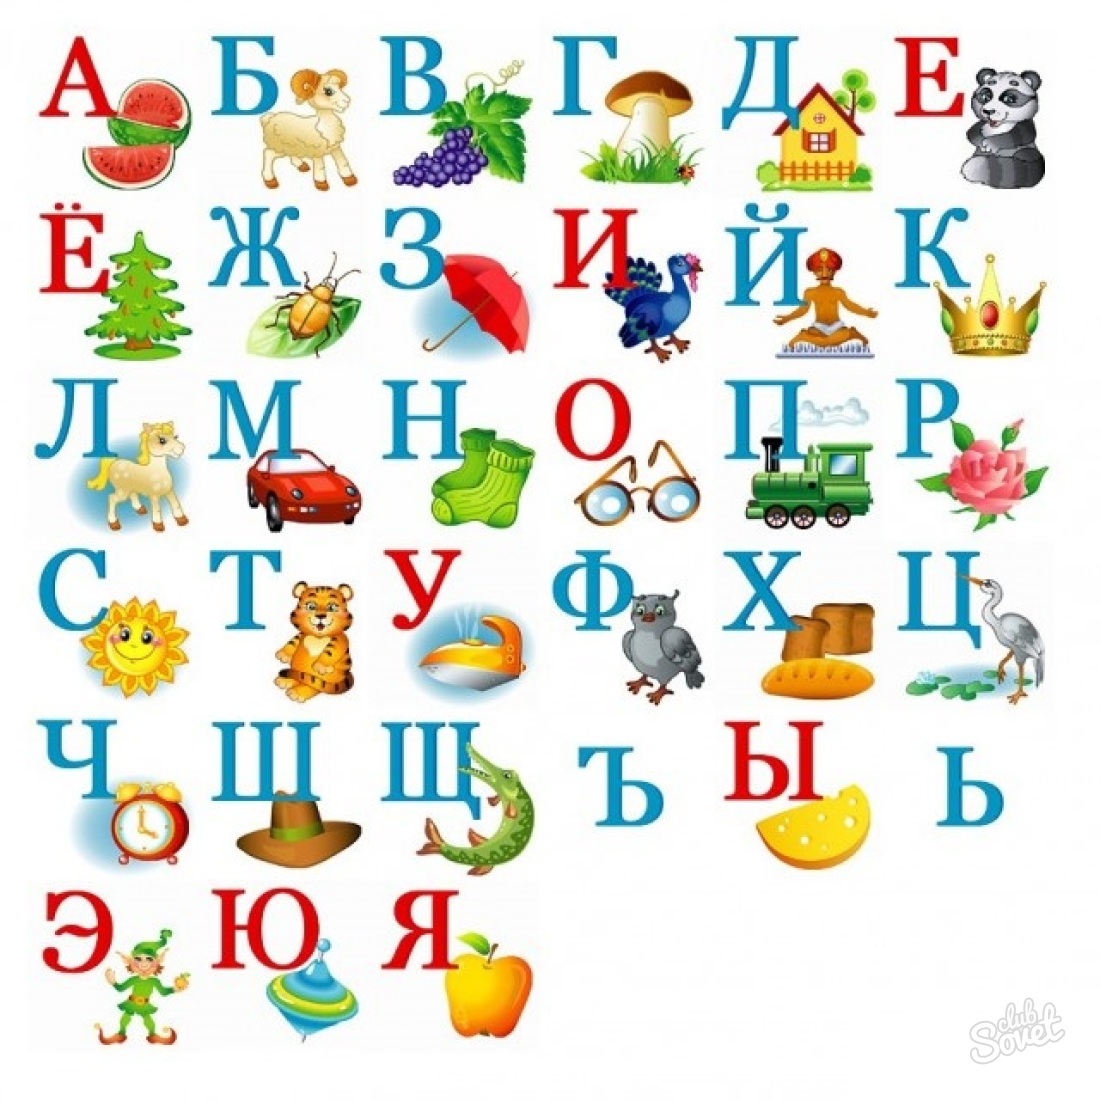 Como aprender o alfabeto com a criança